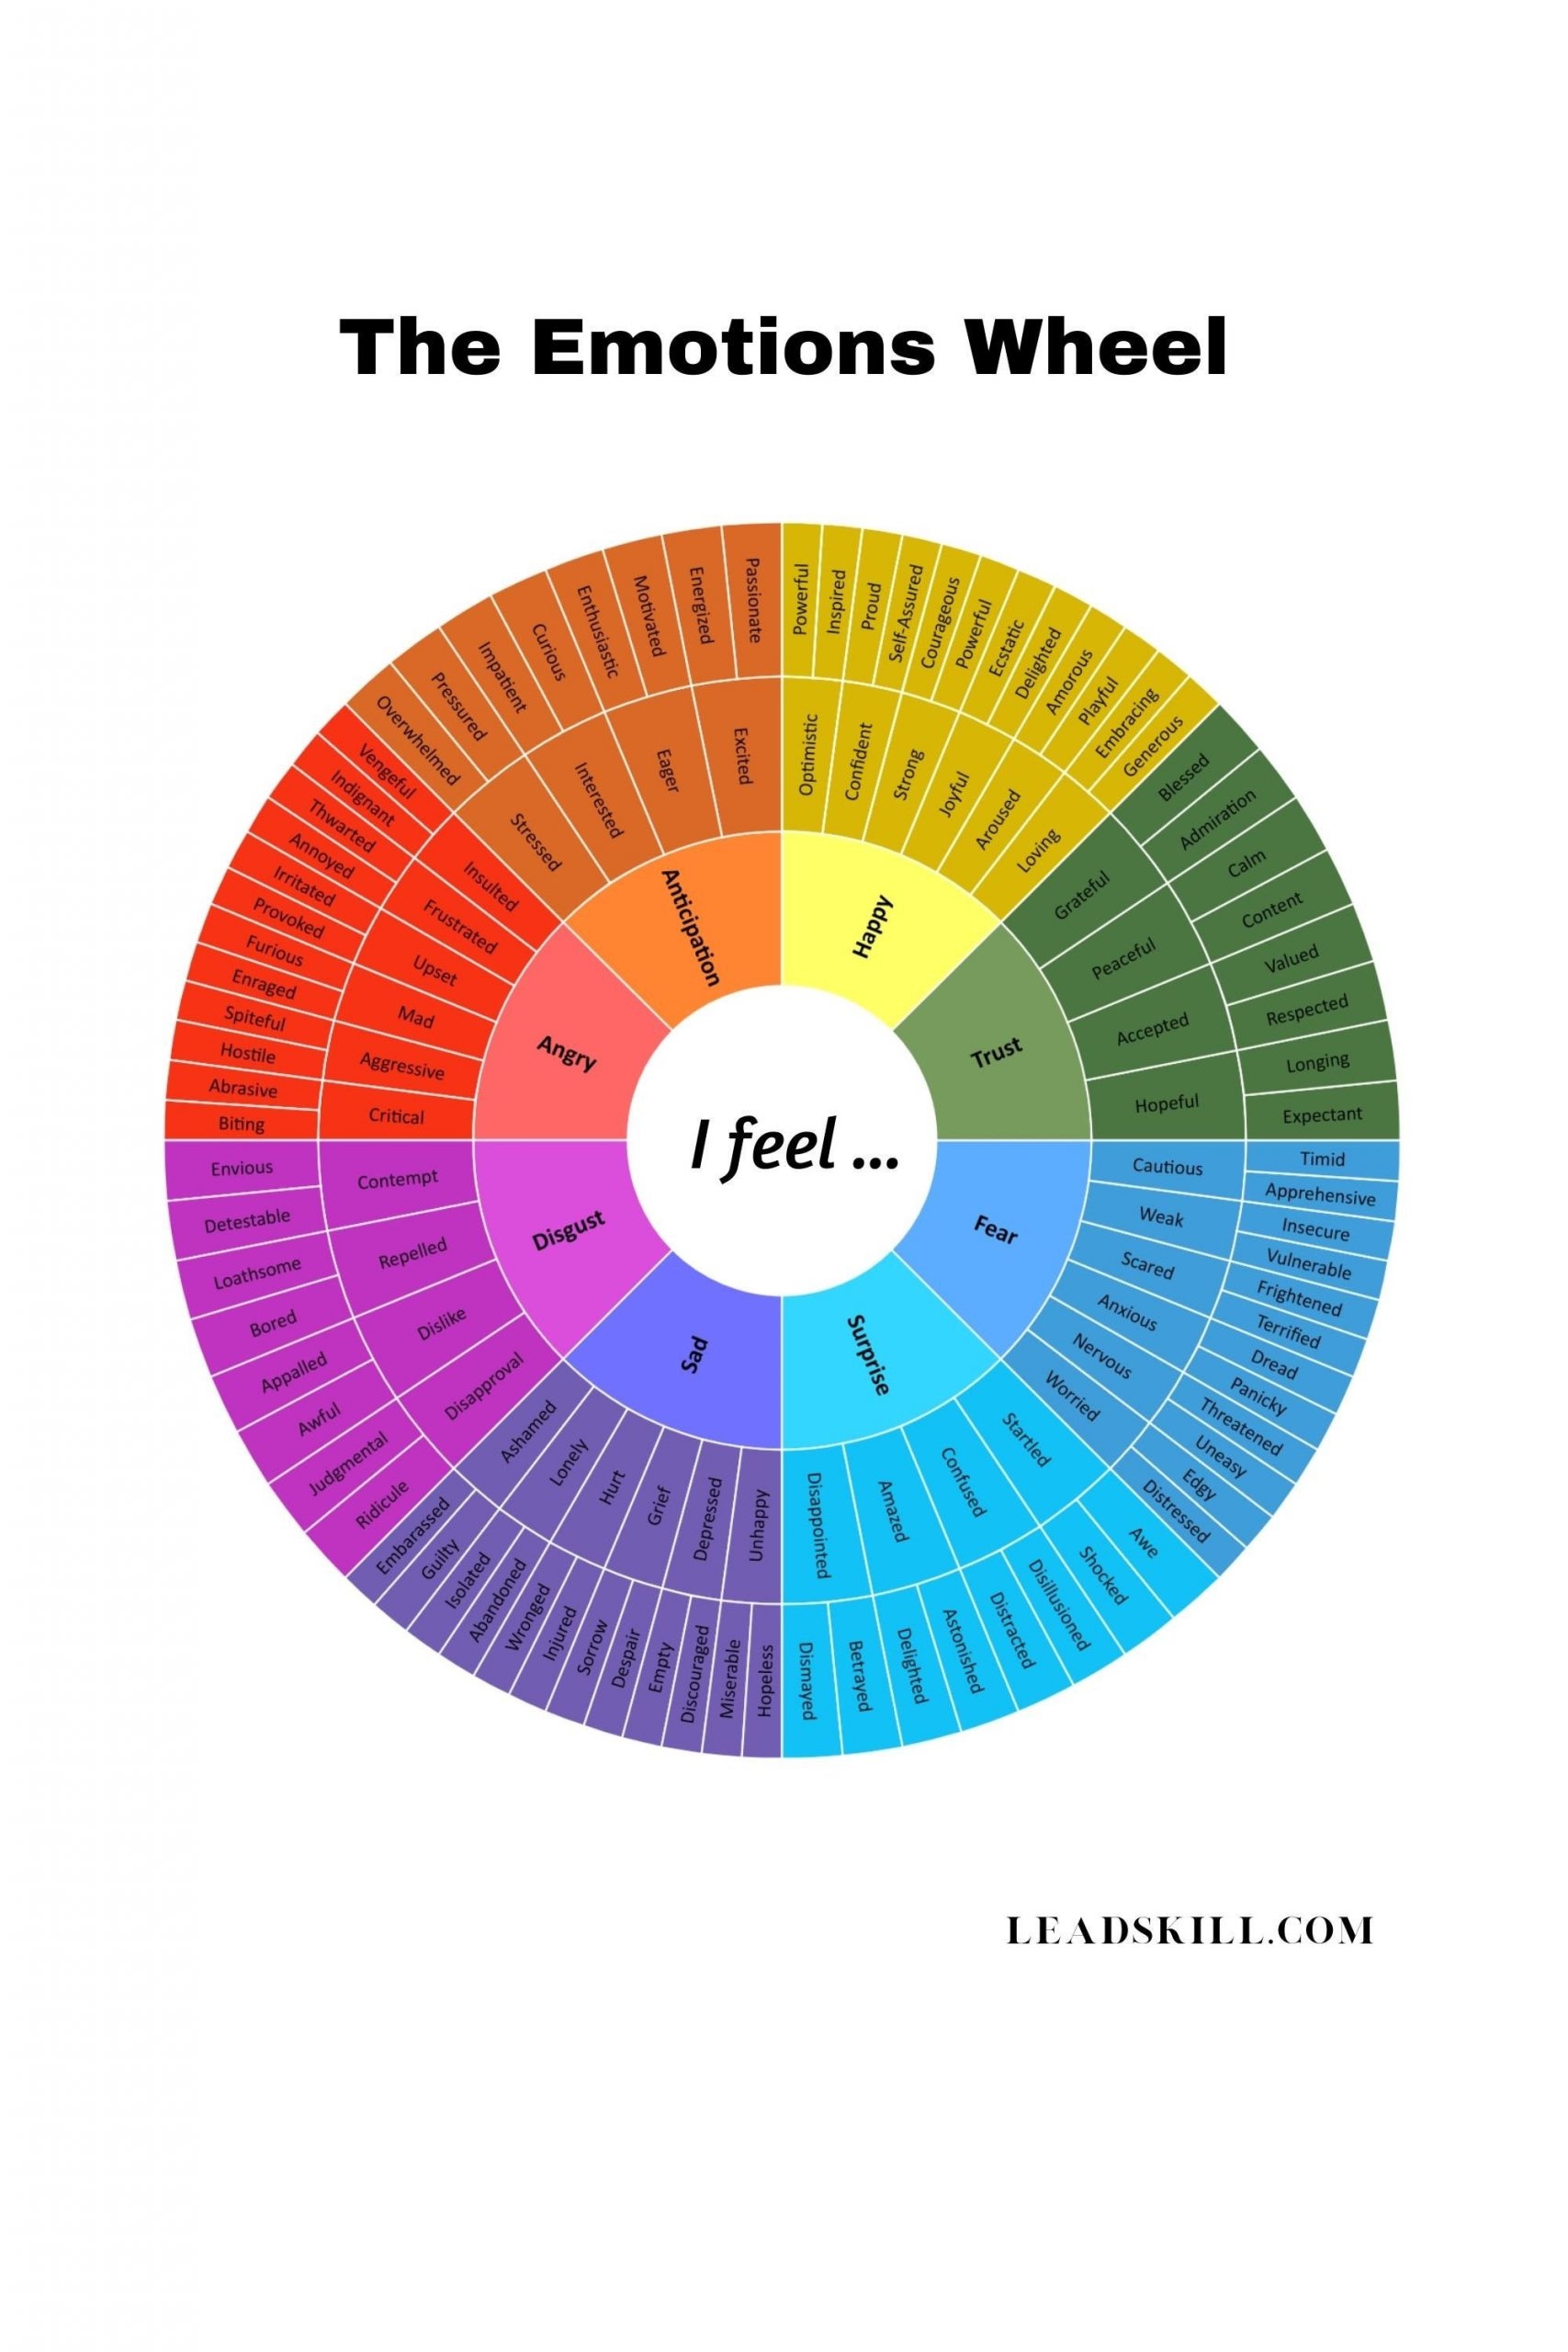 EMOTIONS WHEEL FEELINGS WORD LIST 128 Emotions Digital Download 